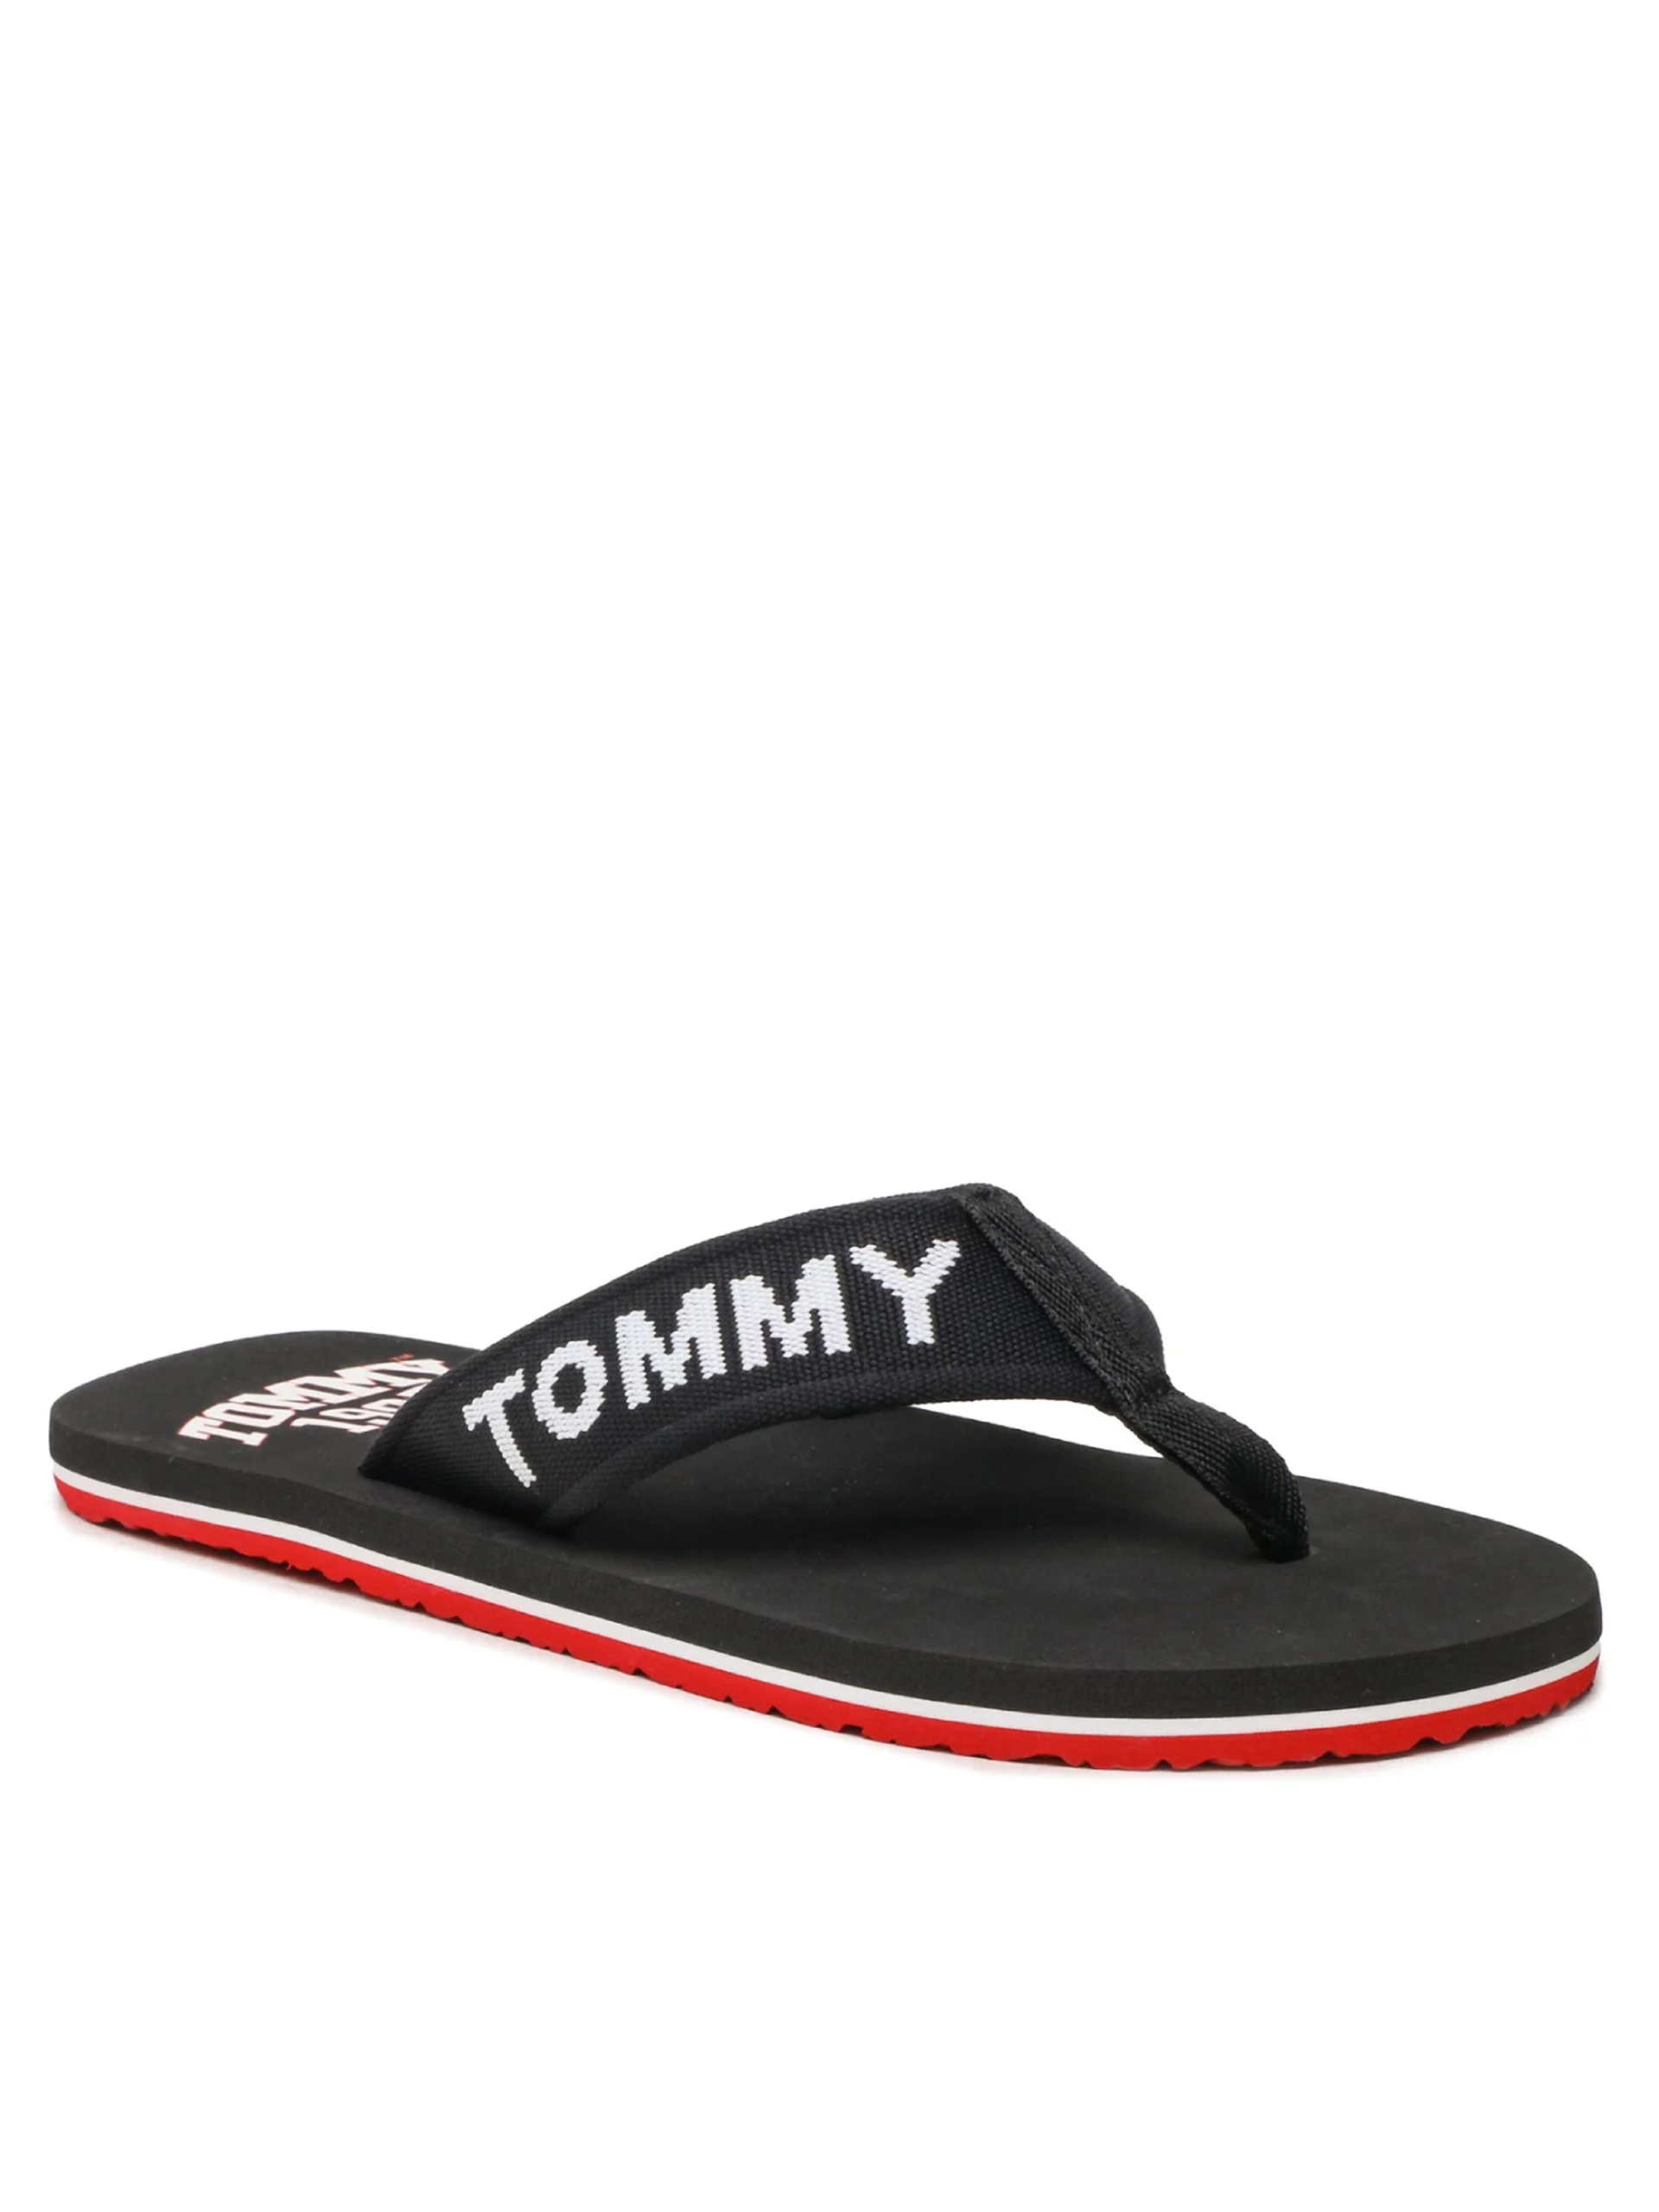 Tommy Jeans pánské černé žabky